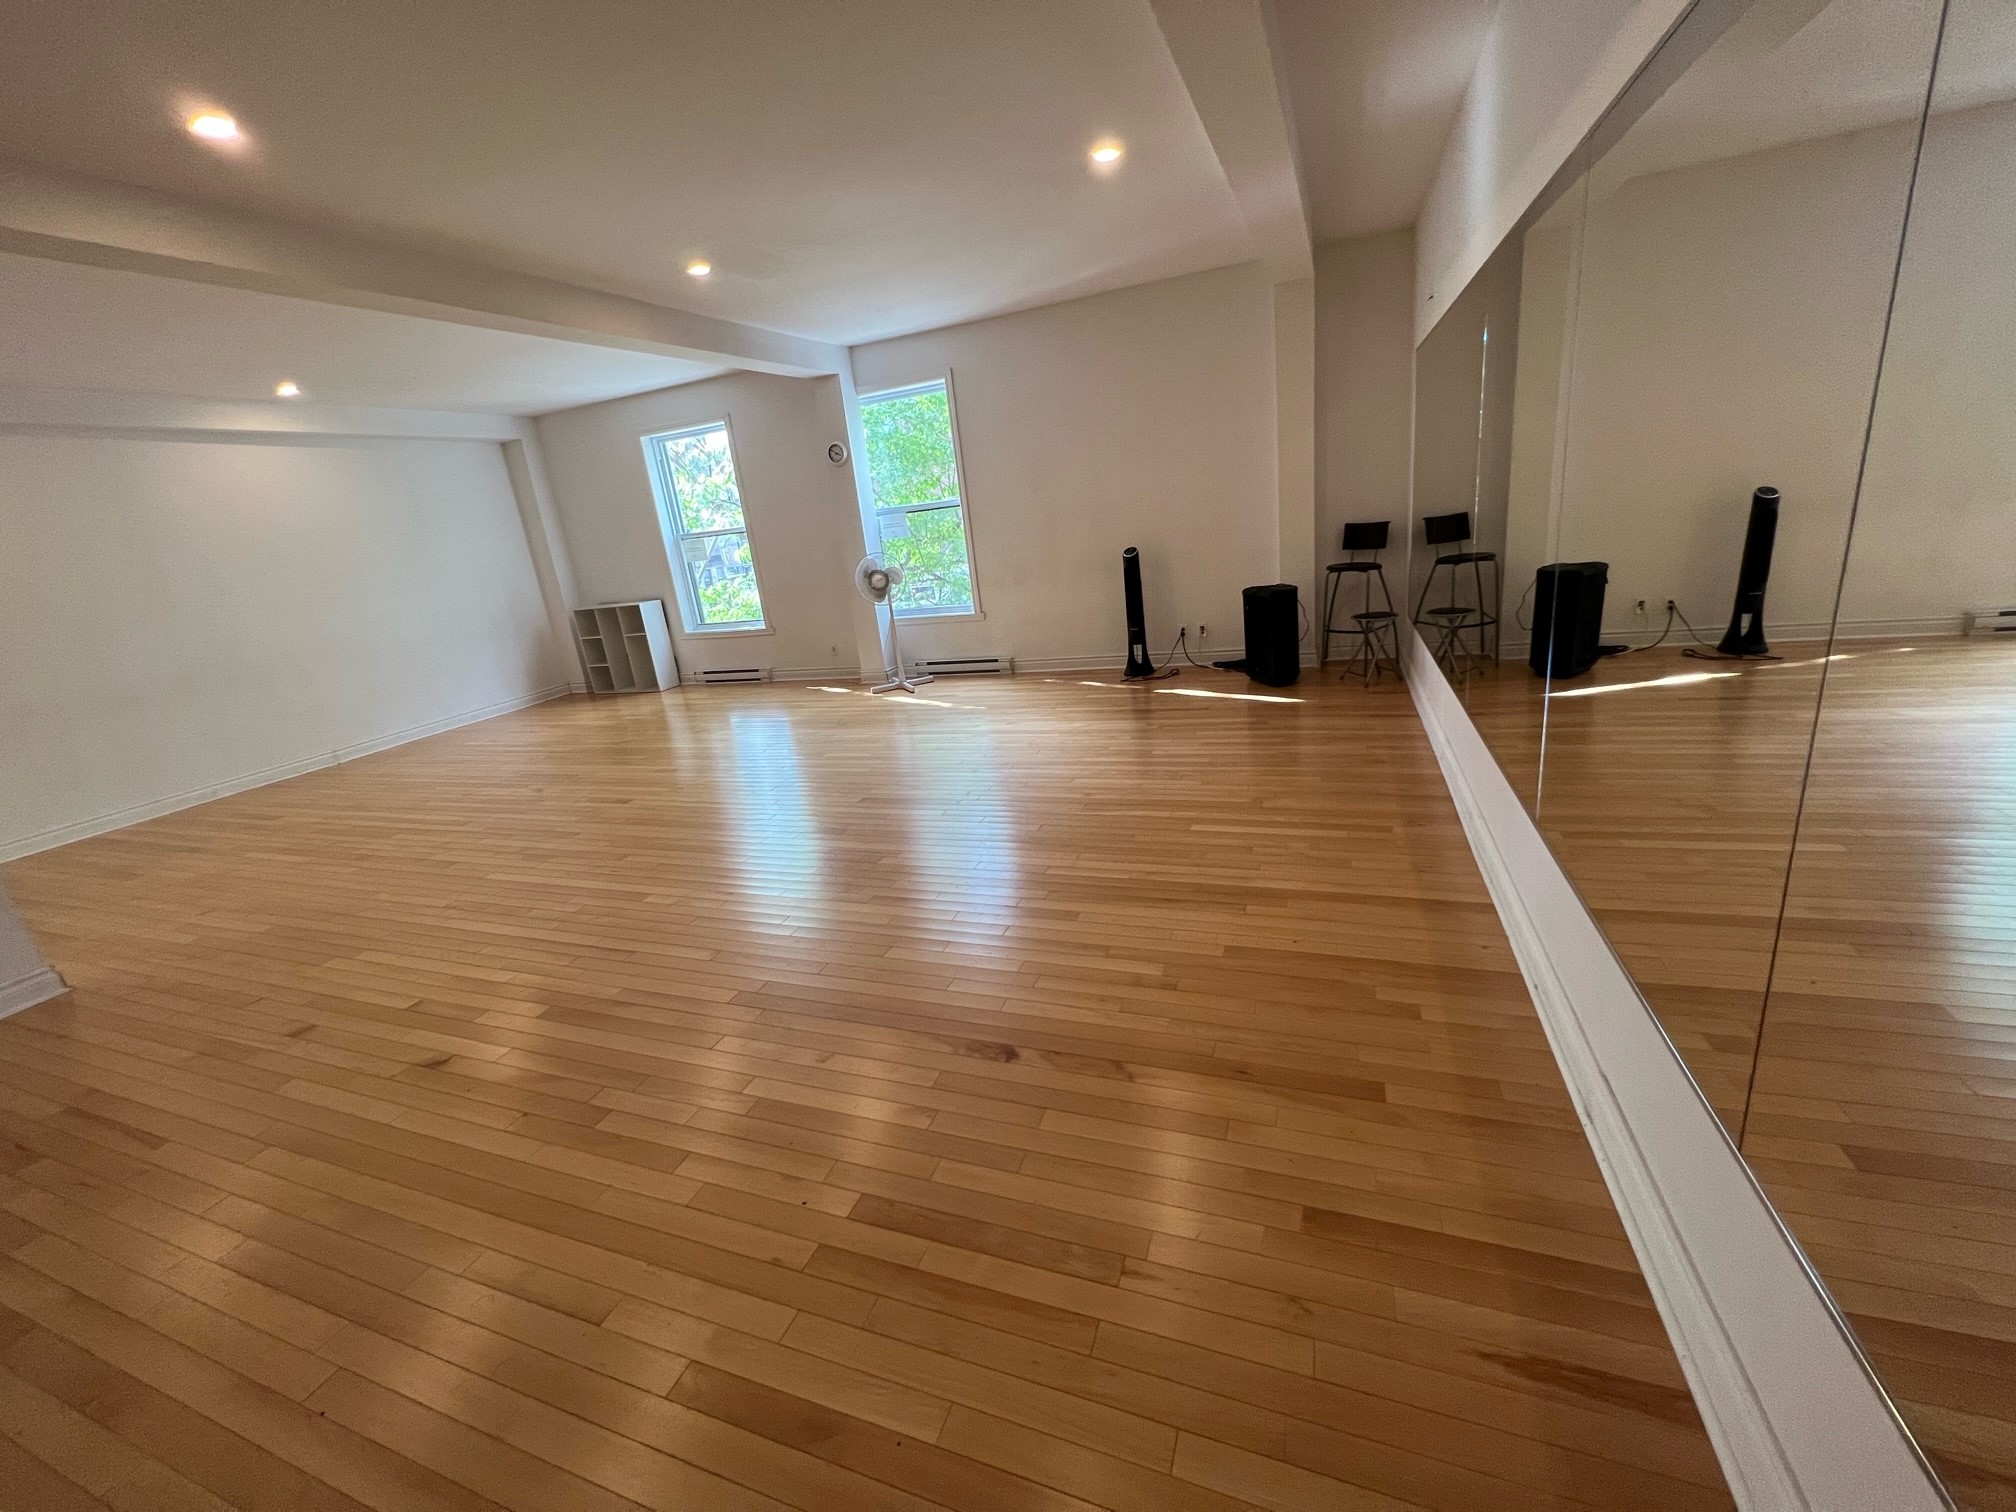 Studio B for rent, Dance studio rental, dance class room for rent